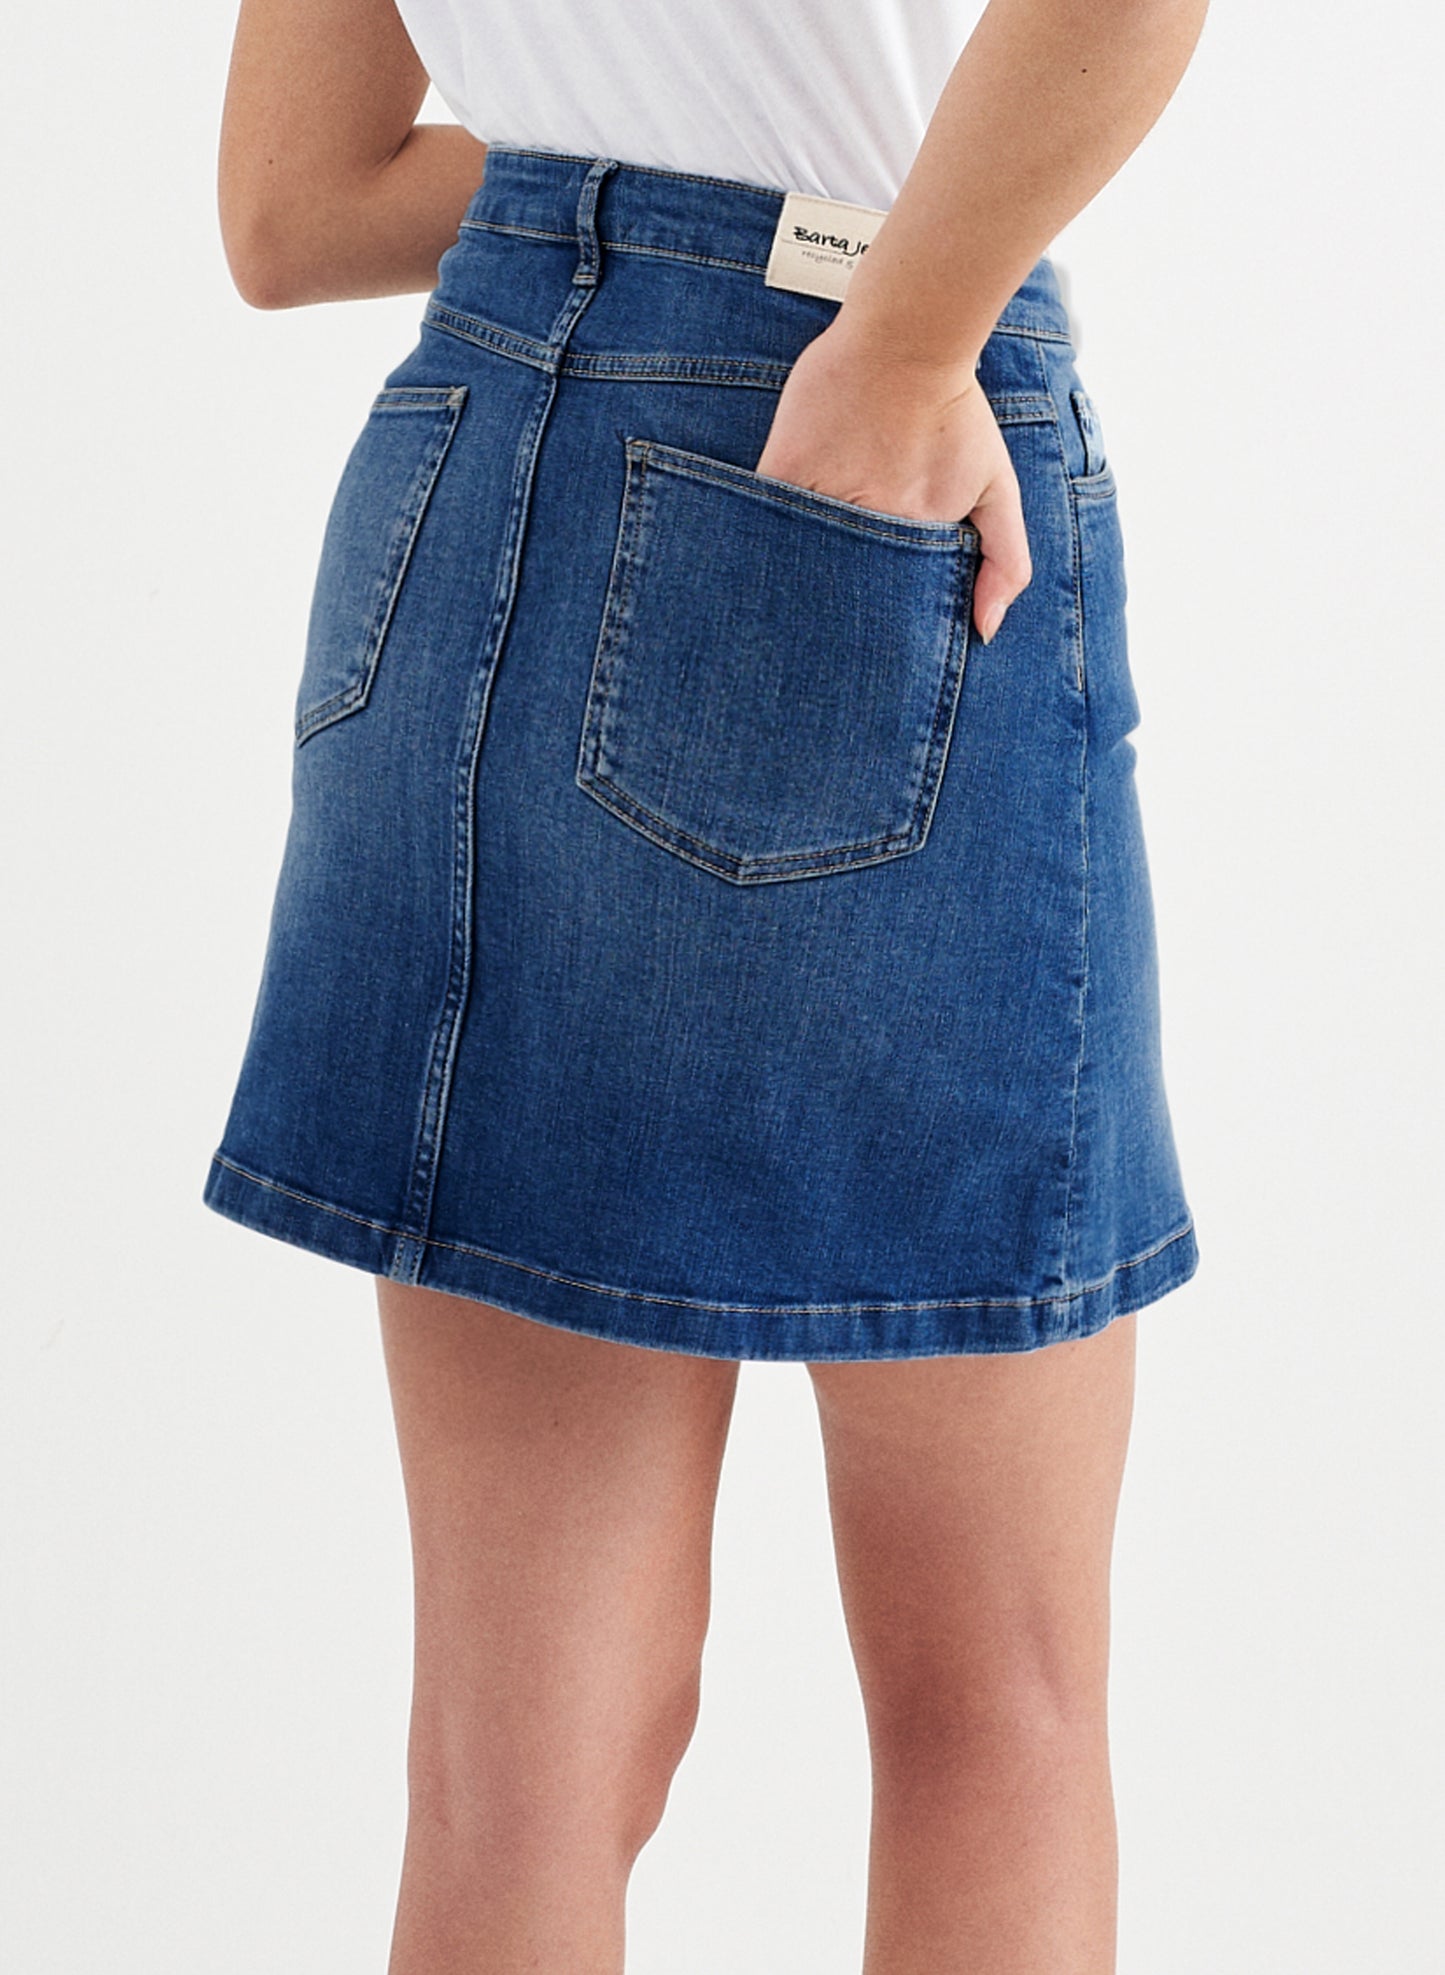 EMMA - Mini Denim Jeans Skirt - Mid Blue